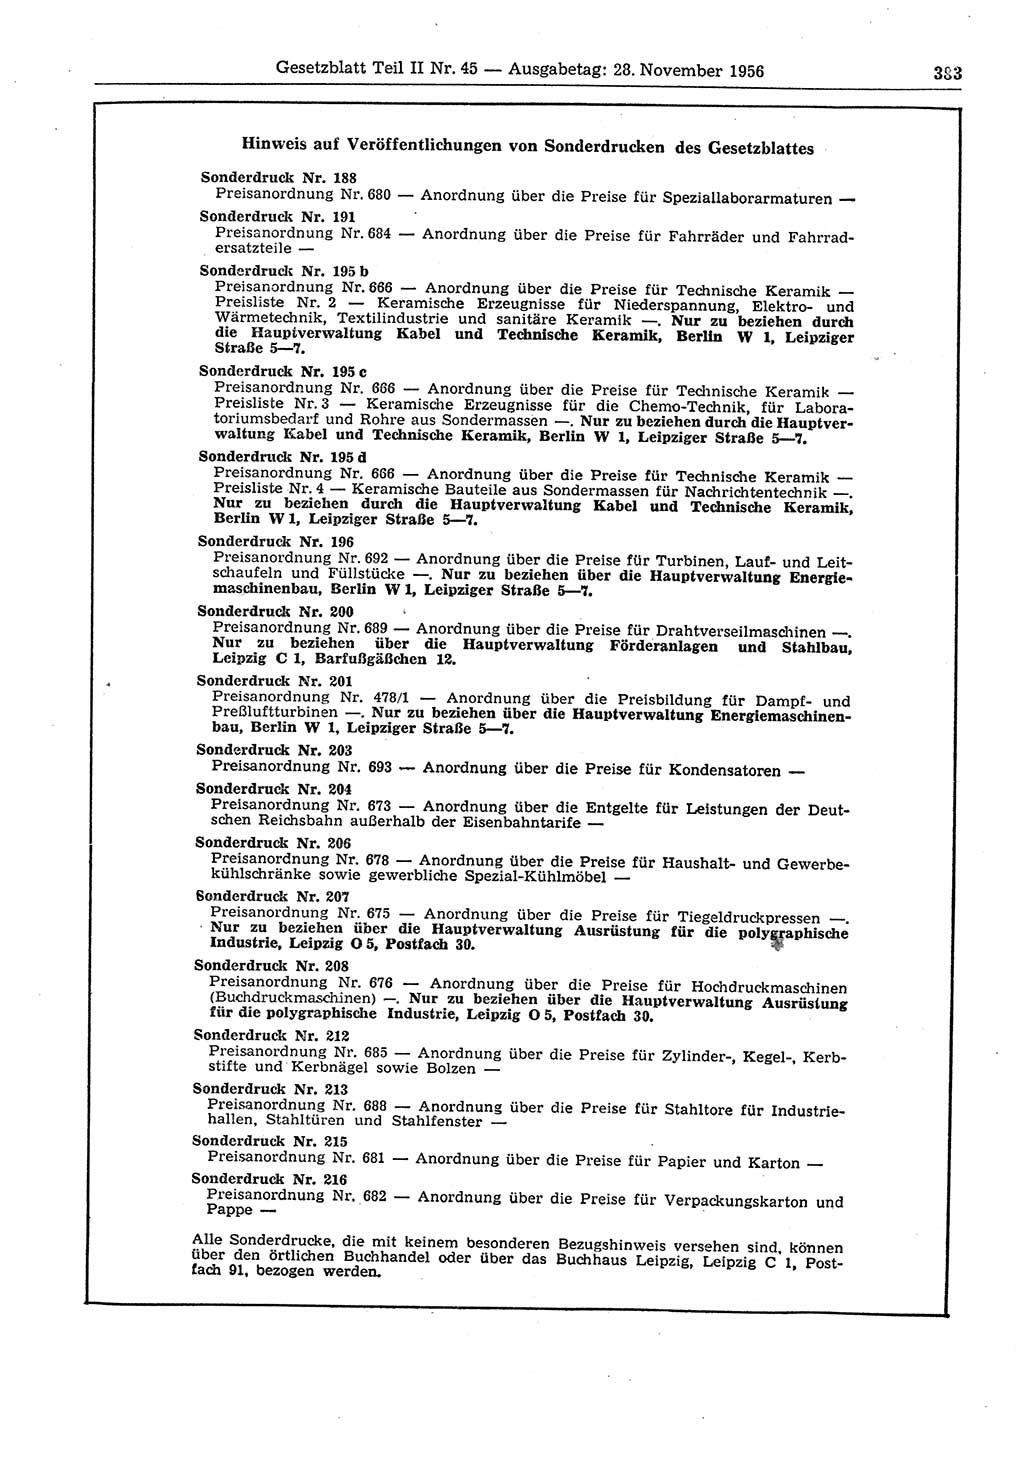 Gesetzblatt (GBl.) der Deutschen Demokratischen Republik (DDR) Teil ⅠⅠ 1956, Seite 383 (GBl. DDR ⅠⅠ 1956, S. 383)